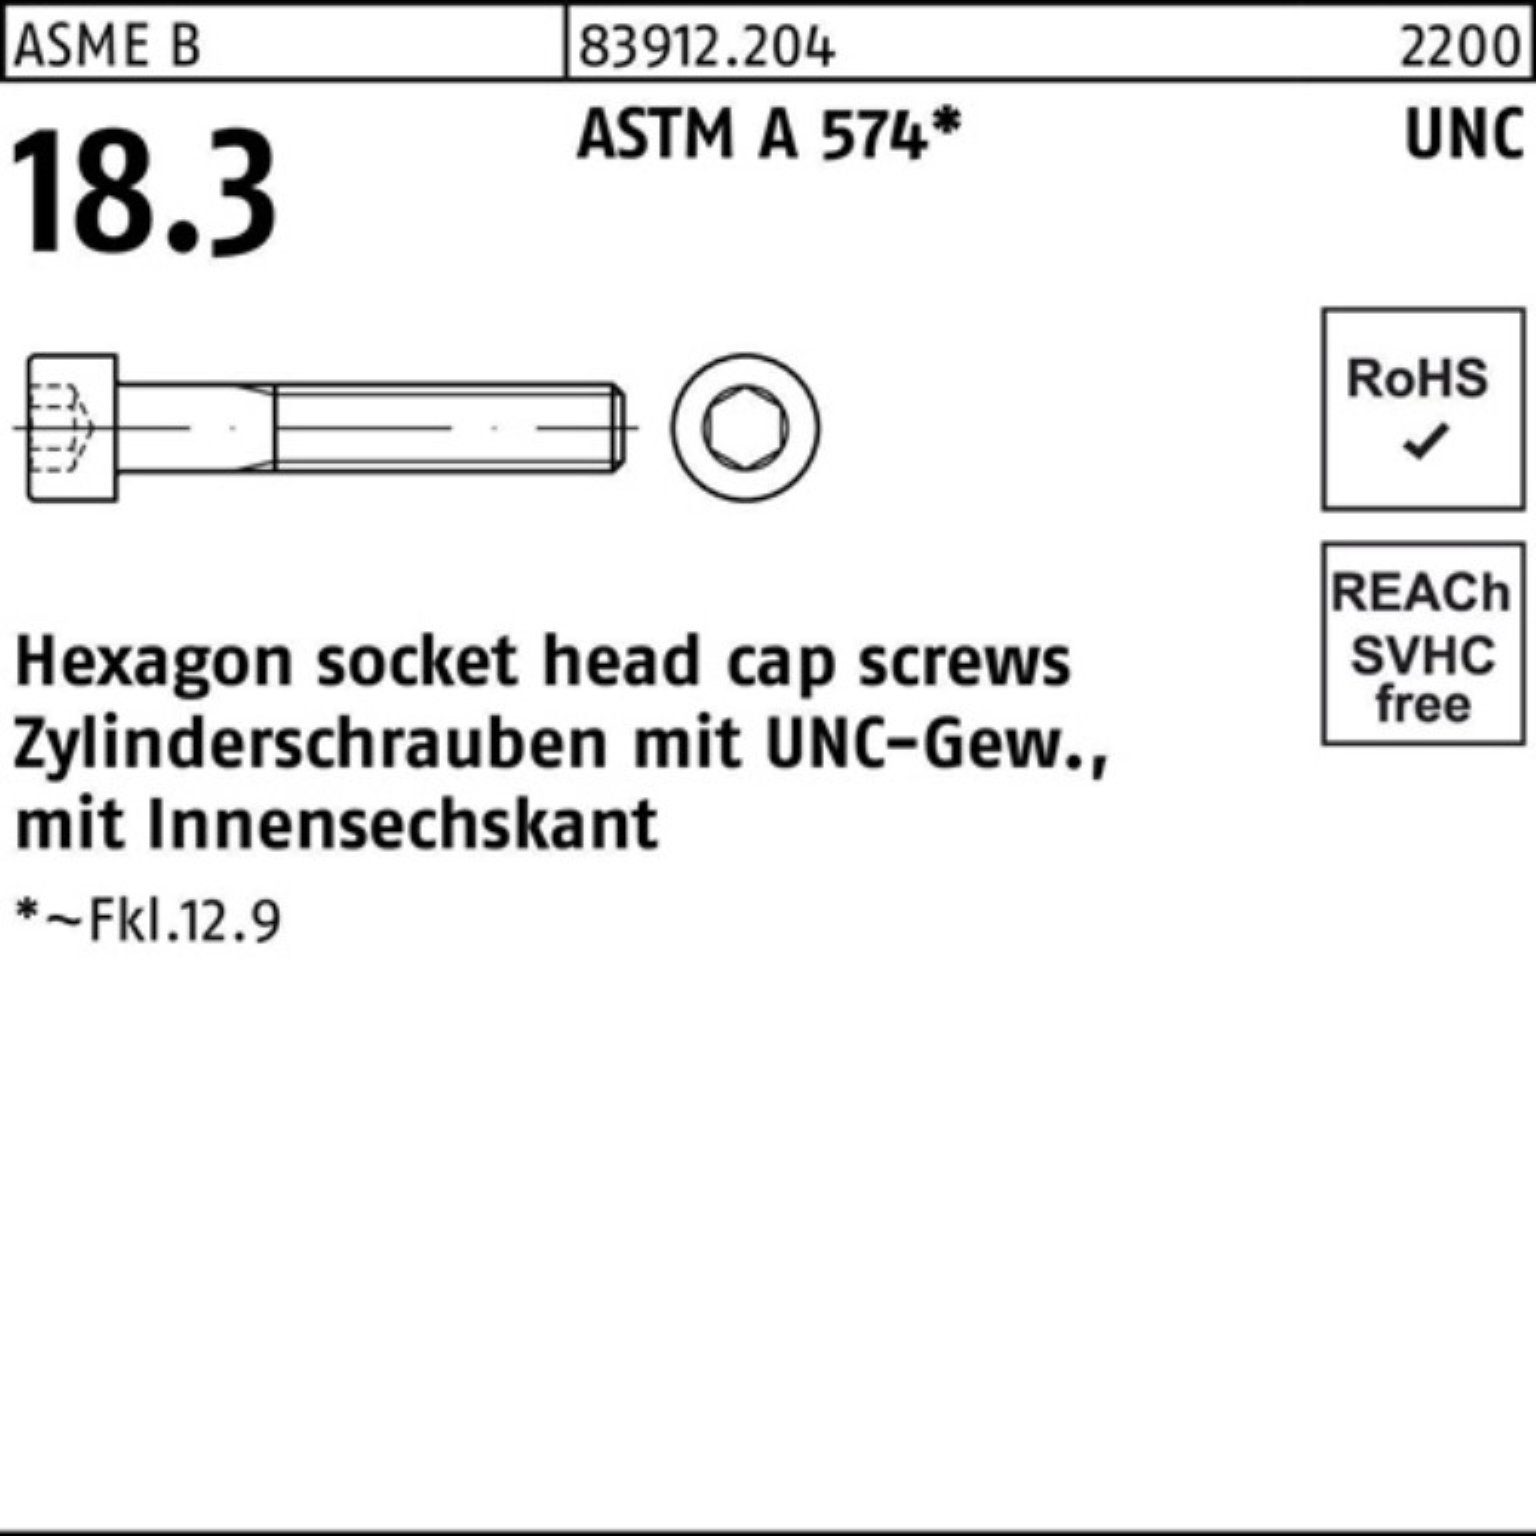 Pack 4 Zylinderschraube Zylinderschraube AST 83912 UNC-Gewinde/Innen-6kt 1/2x Reyher 100er R 1